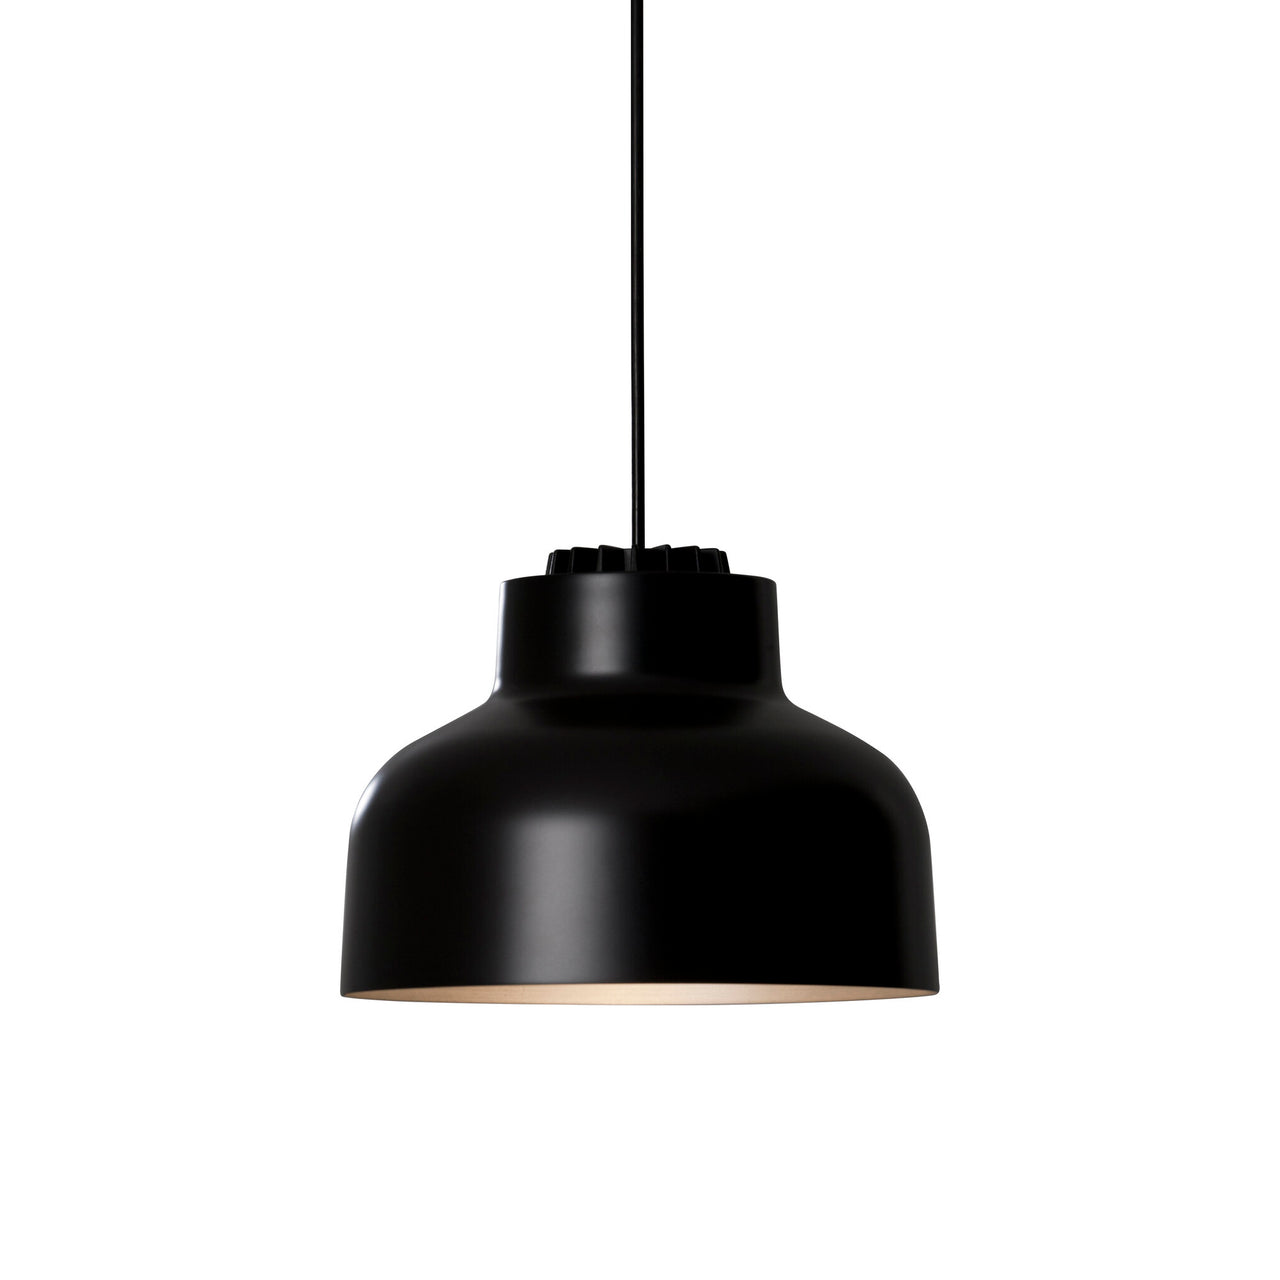 M64 Pendant Lamp: Black Matte Aluminum